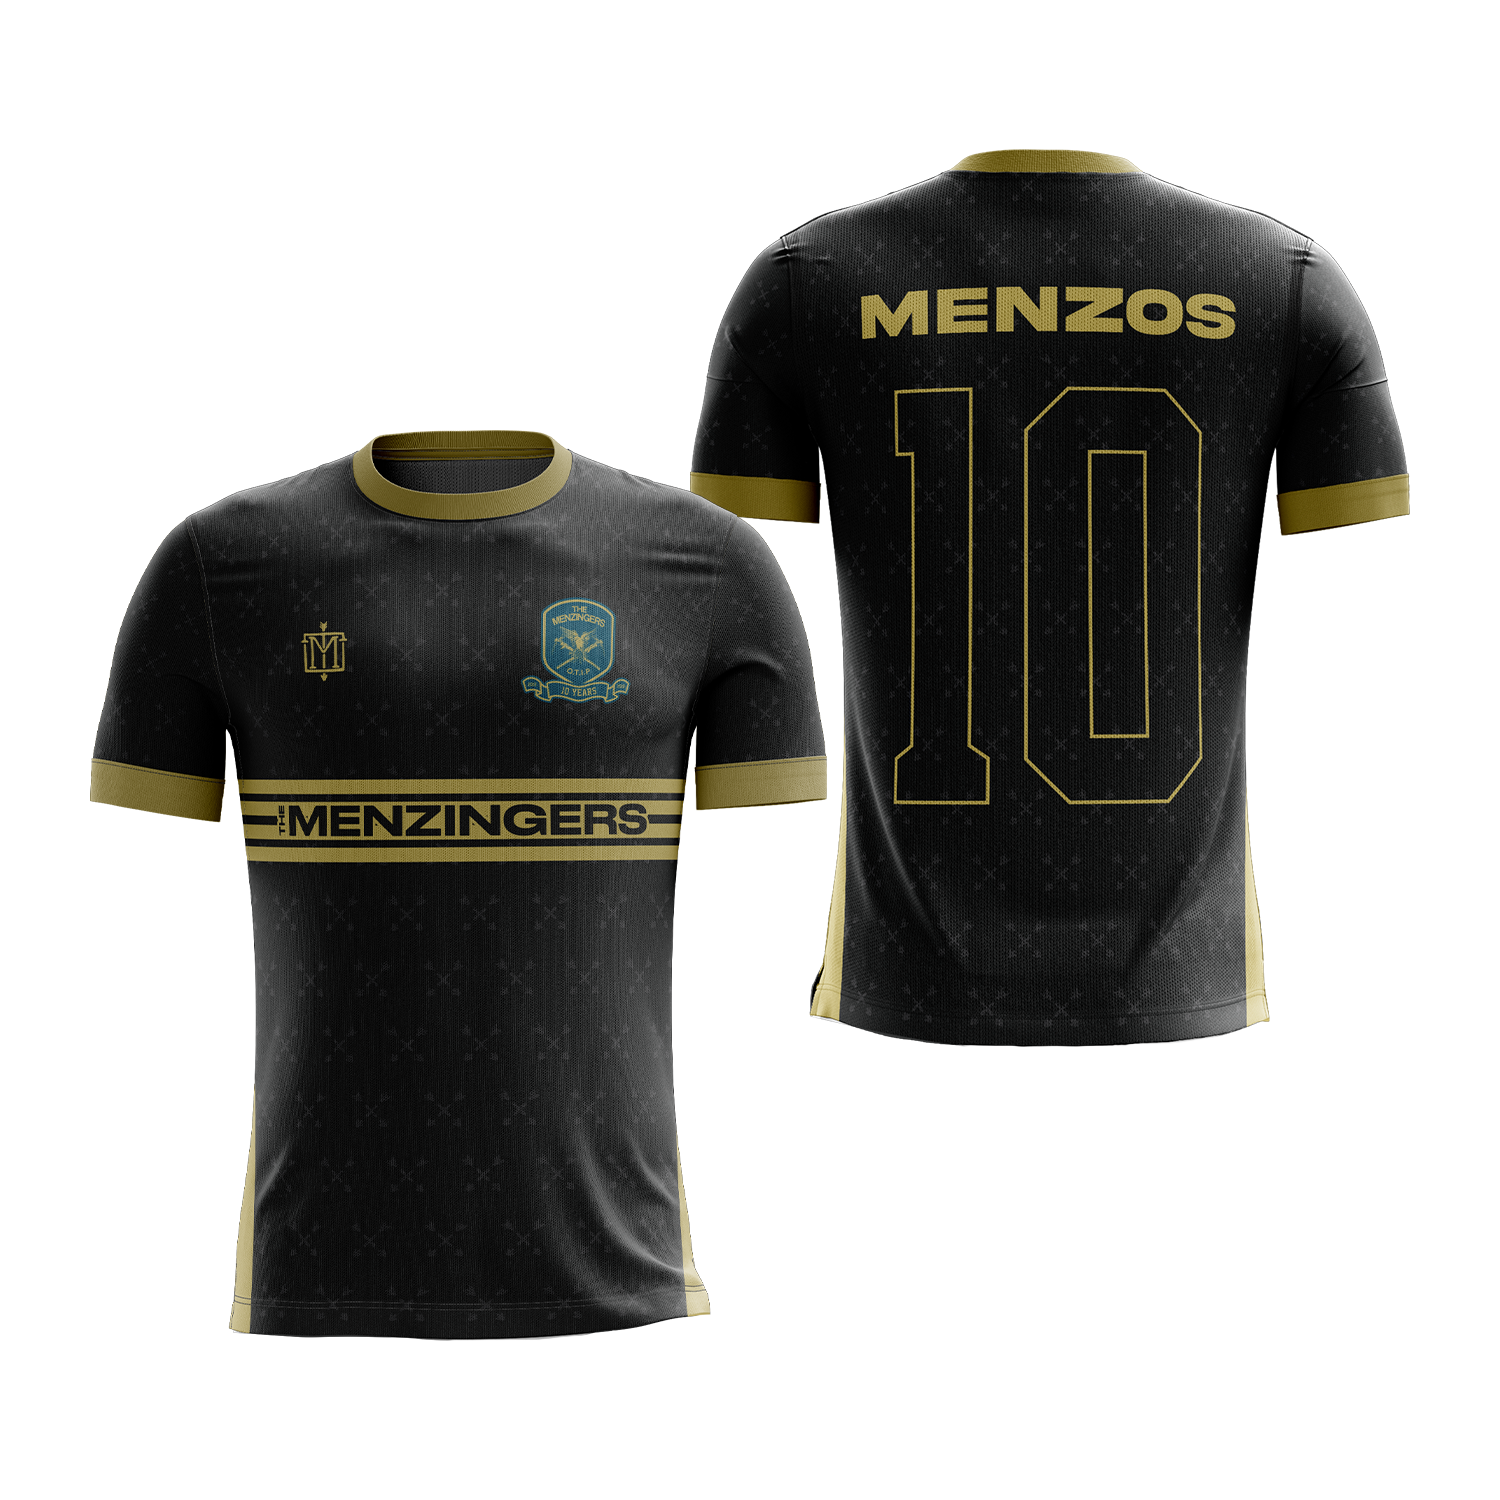 The Menzingers Jersey T-Shirt